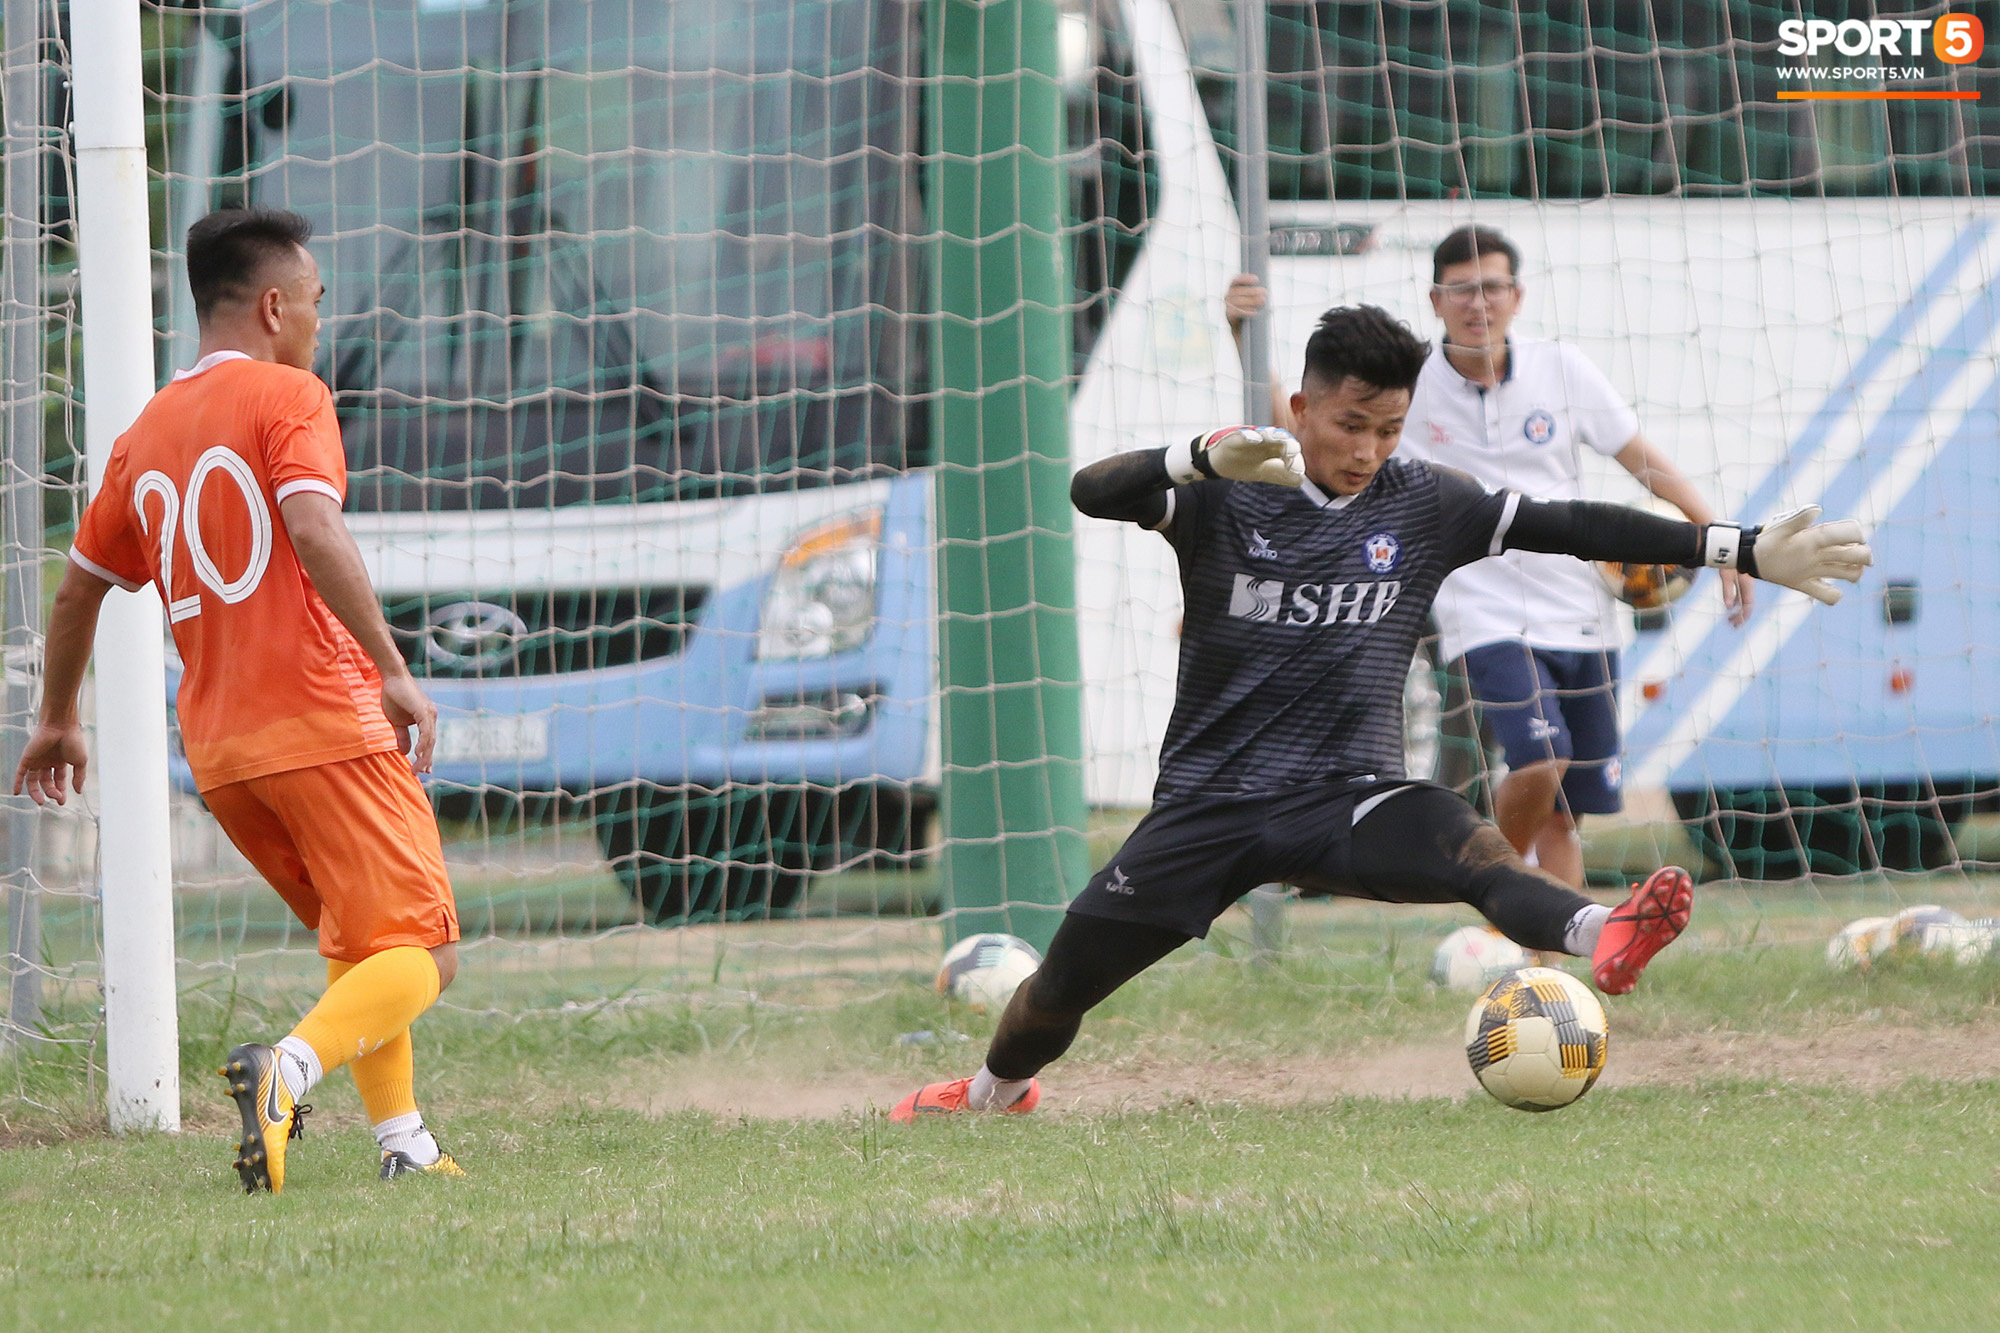 Cựu tuyển thủ U19 Việt Nam bắt bài CLB TP.HCM: Họ sẽ chuyền bóng thật nhiều cho Công Phượng - Ảnh 9.